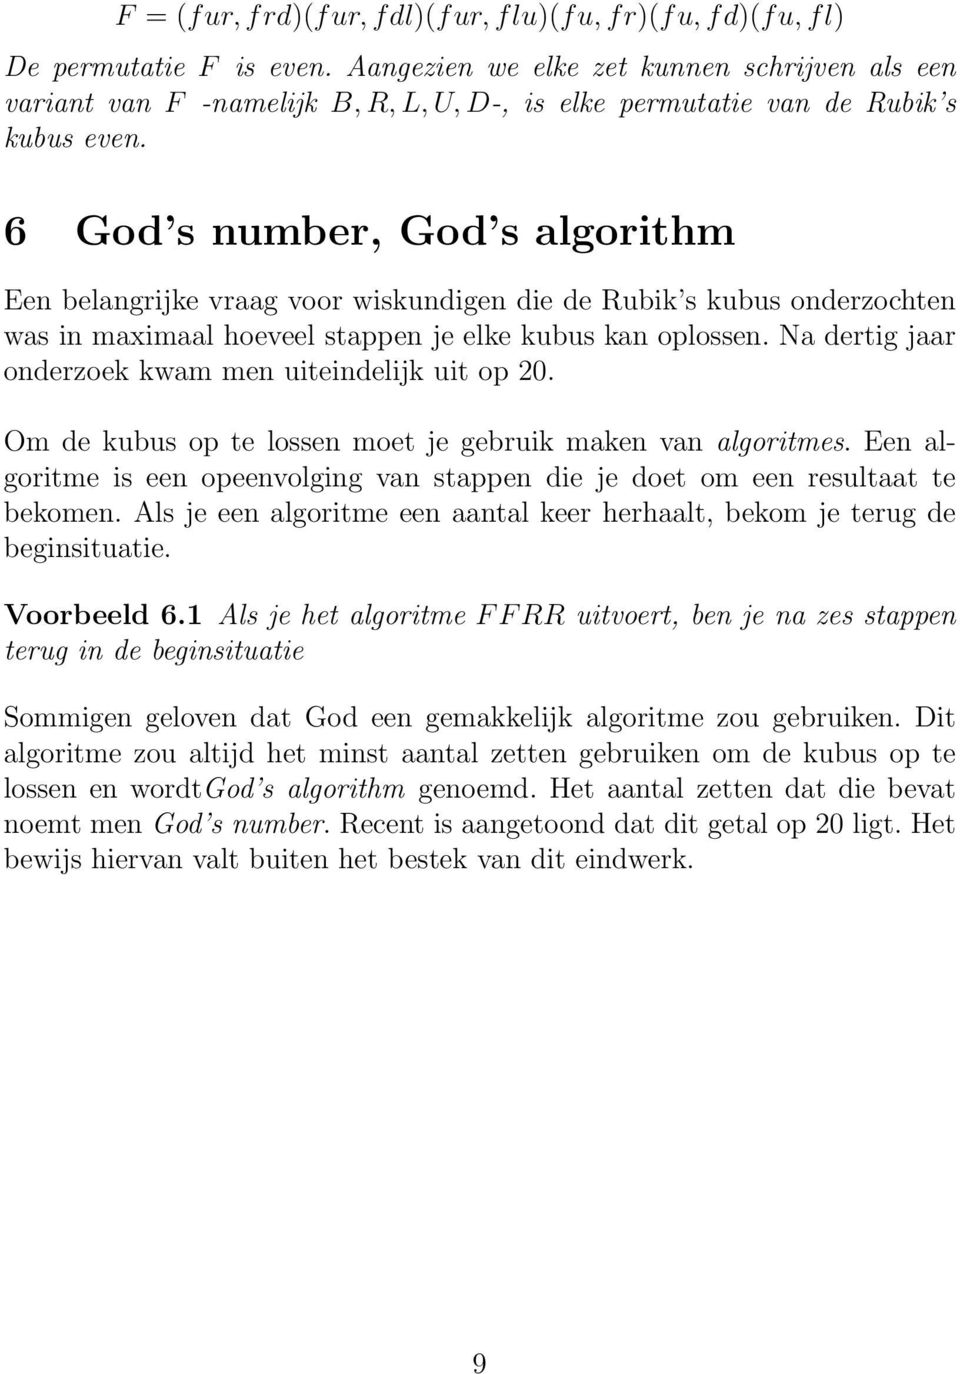 6 God s number, God s algorithm Een belangrijke vraag voor wiskundigen die de Rubik s kubus onderzochten was in maximaal hoeveel stappen je elke kubus kan oplossen.